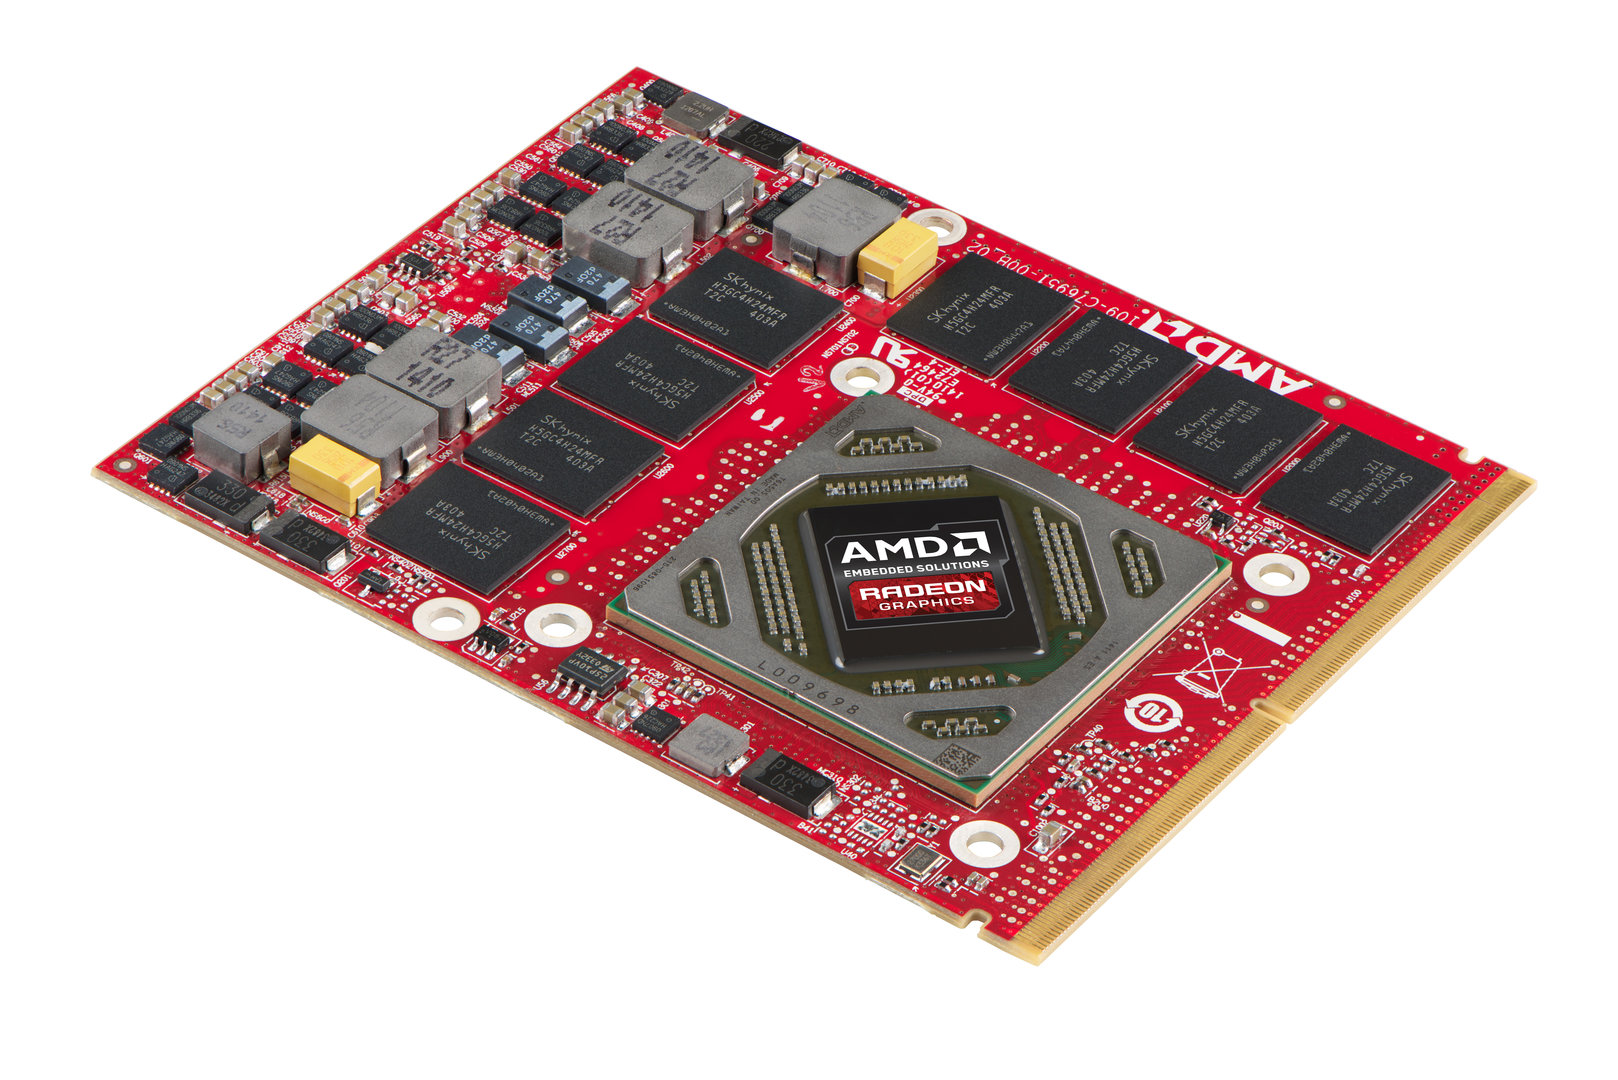 AMD E8950